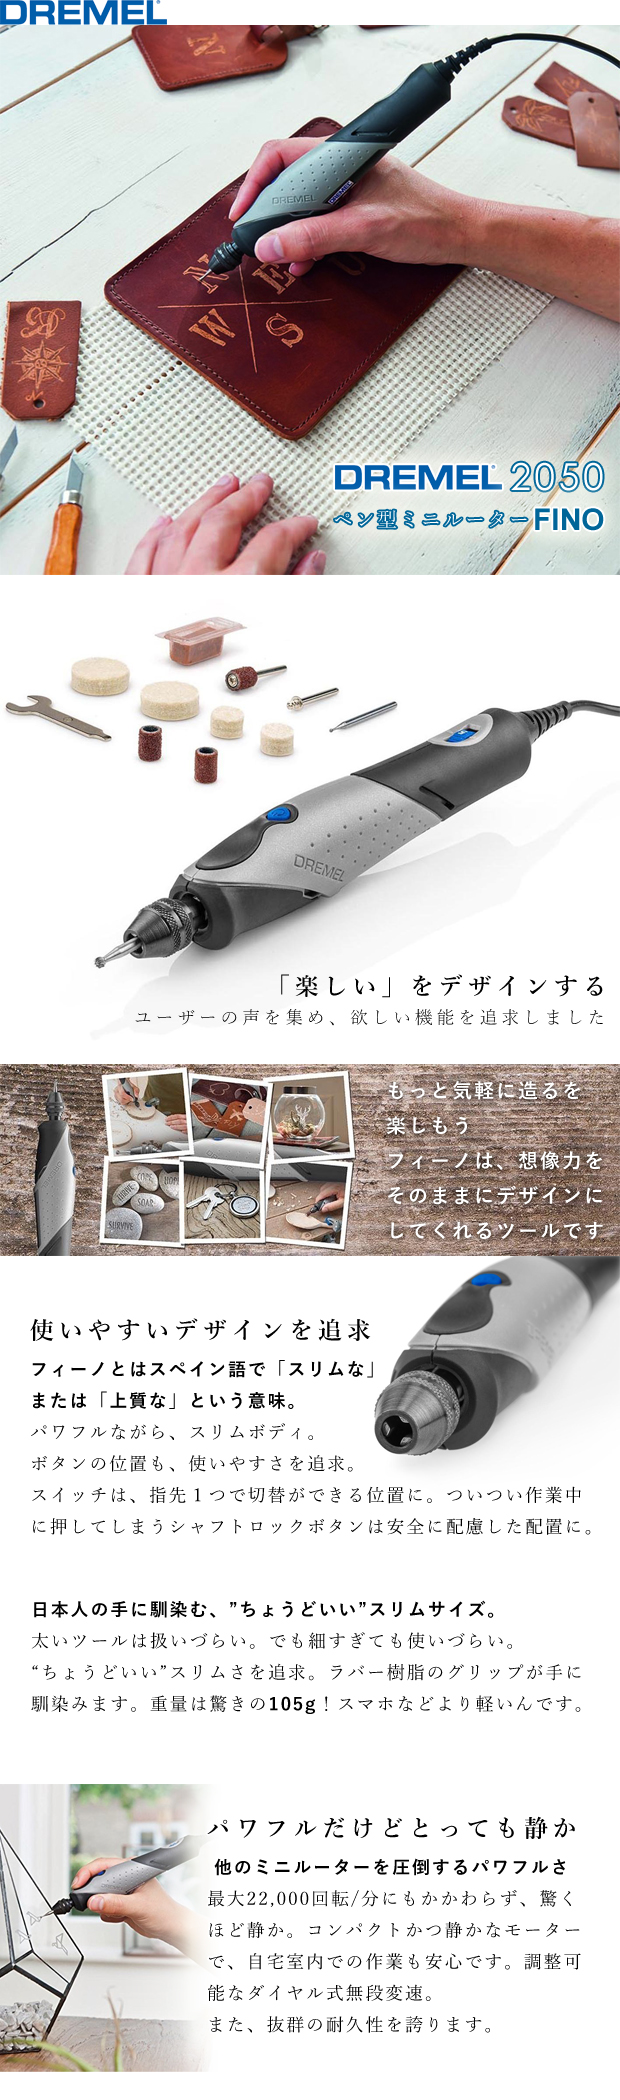 ドレメル ペン型ミニルーター DREMEL2050 フィーノ